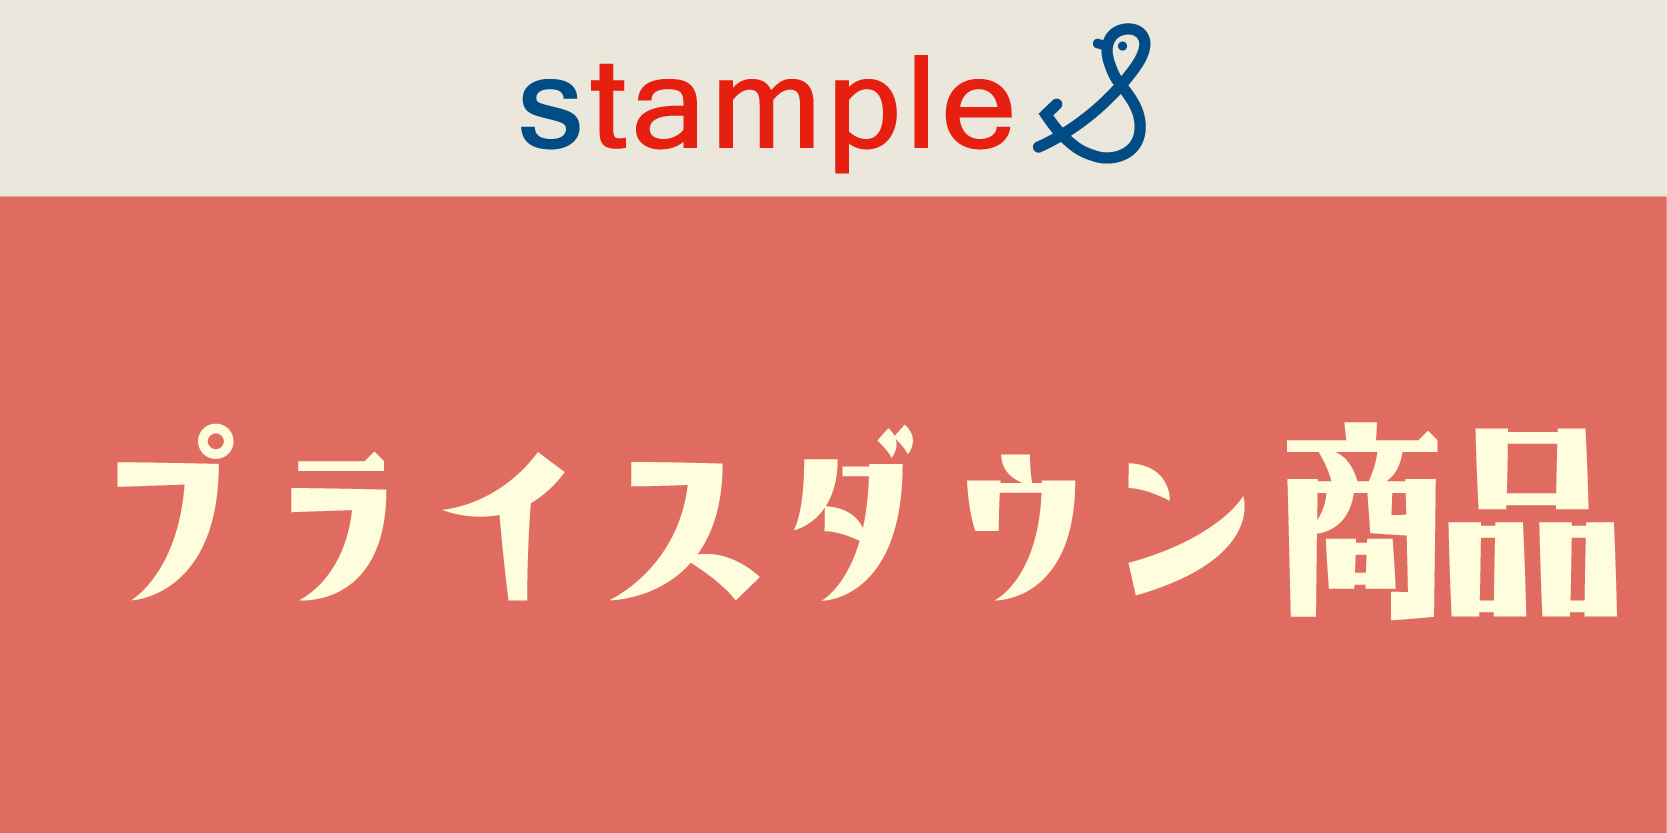 stample：プライスダウン商品